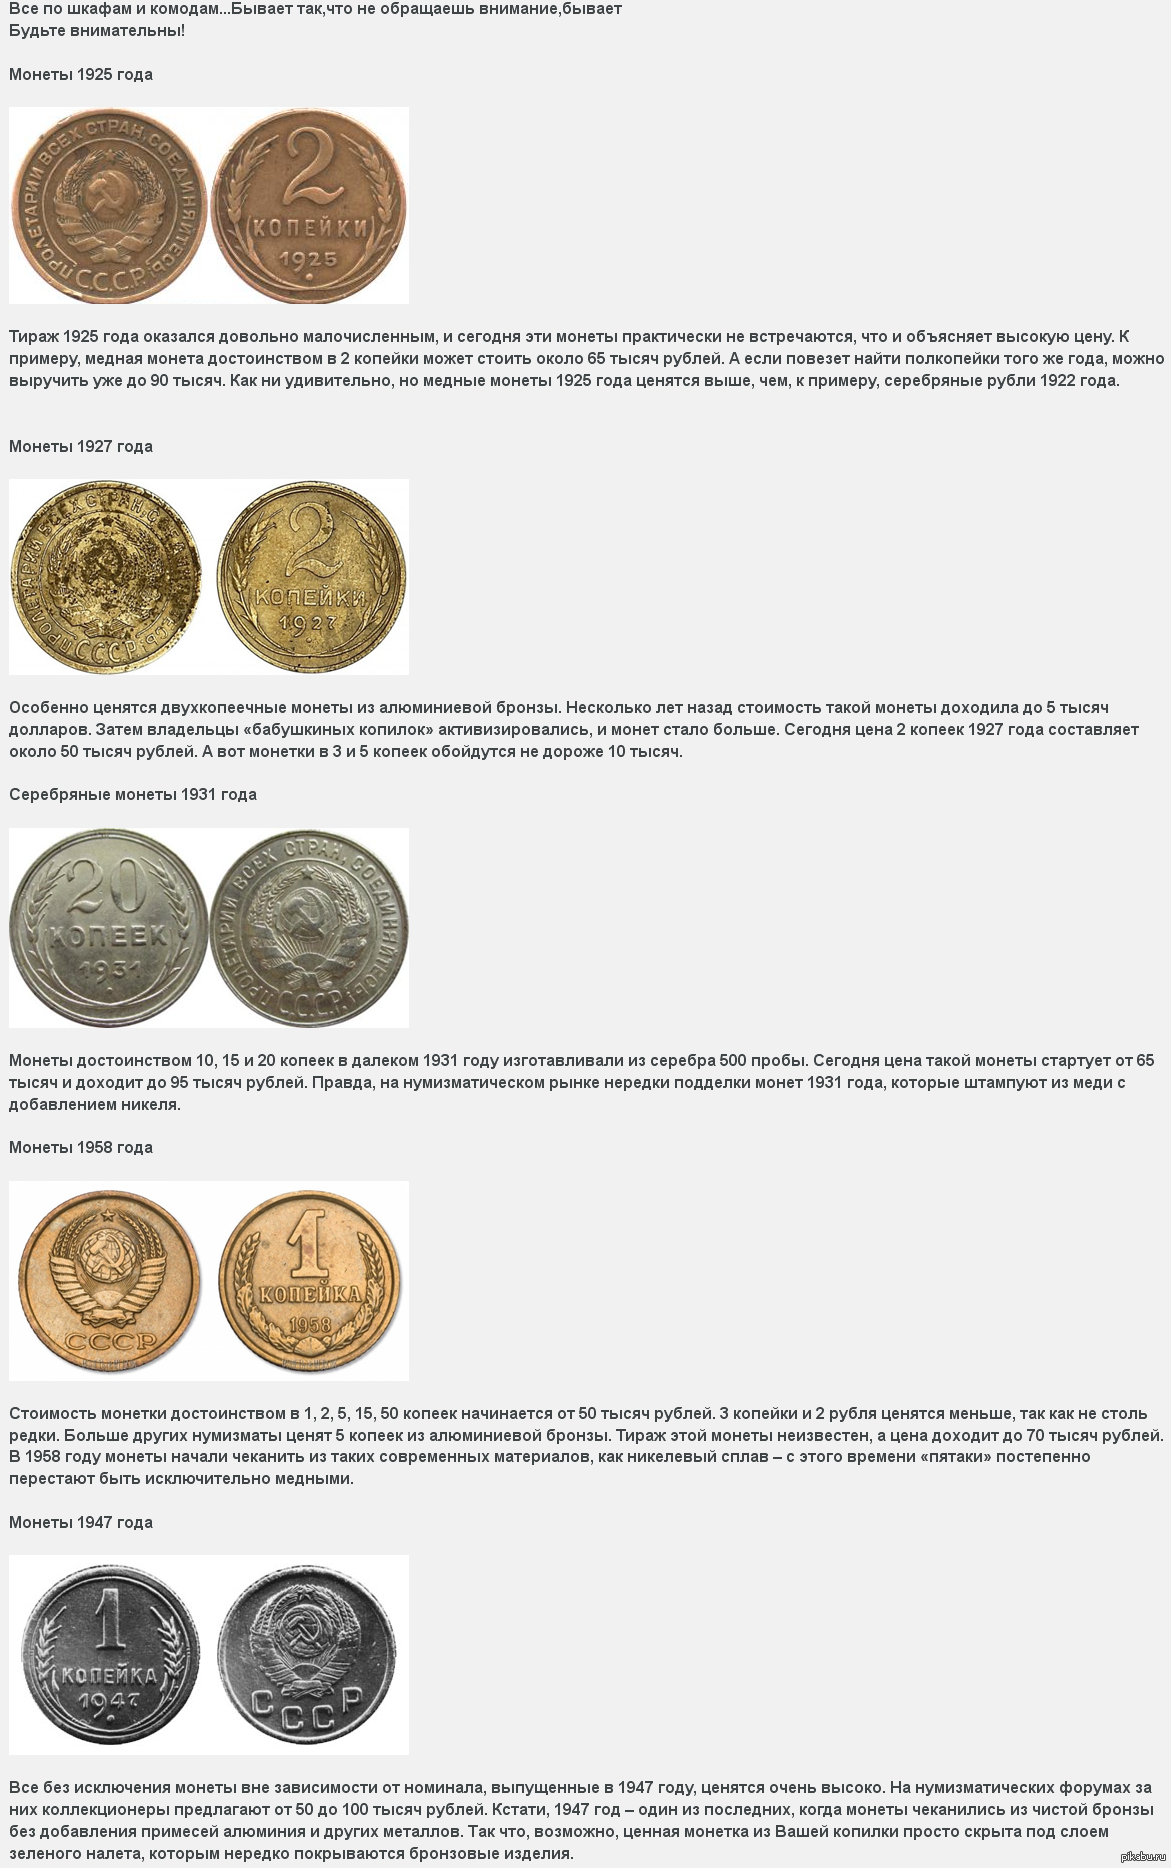 Какие монеты можно продать дорого. Ценность старинных монет таблица. Самые ценные российские монеты таблица. Самые ценные советские монеты таблица. Самые дорогие монеты монетного двора.